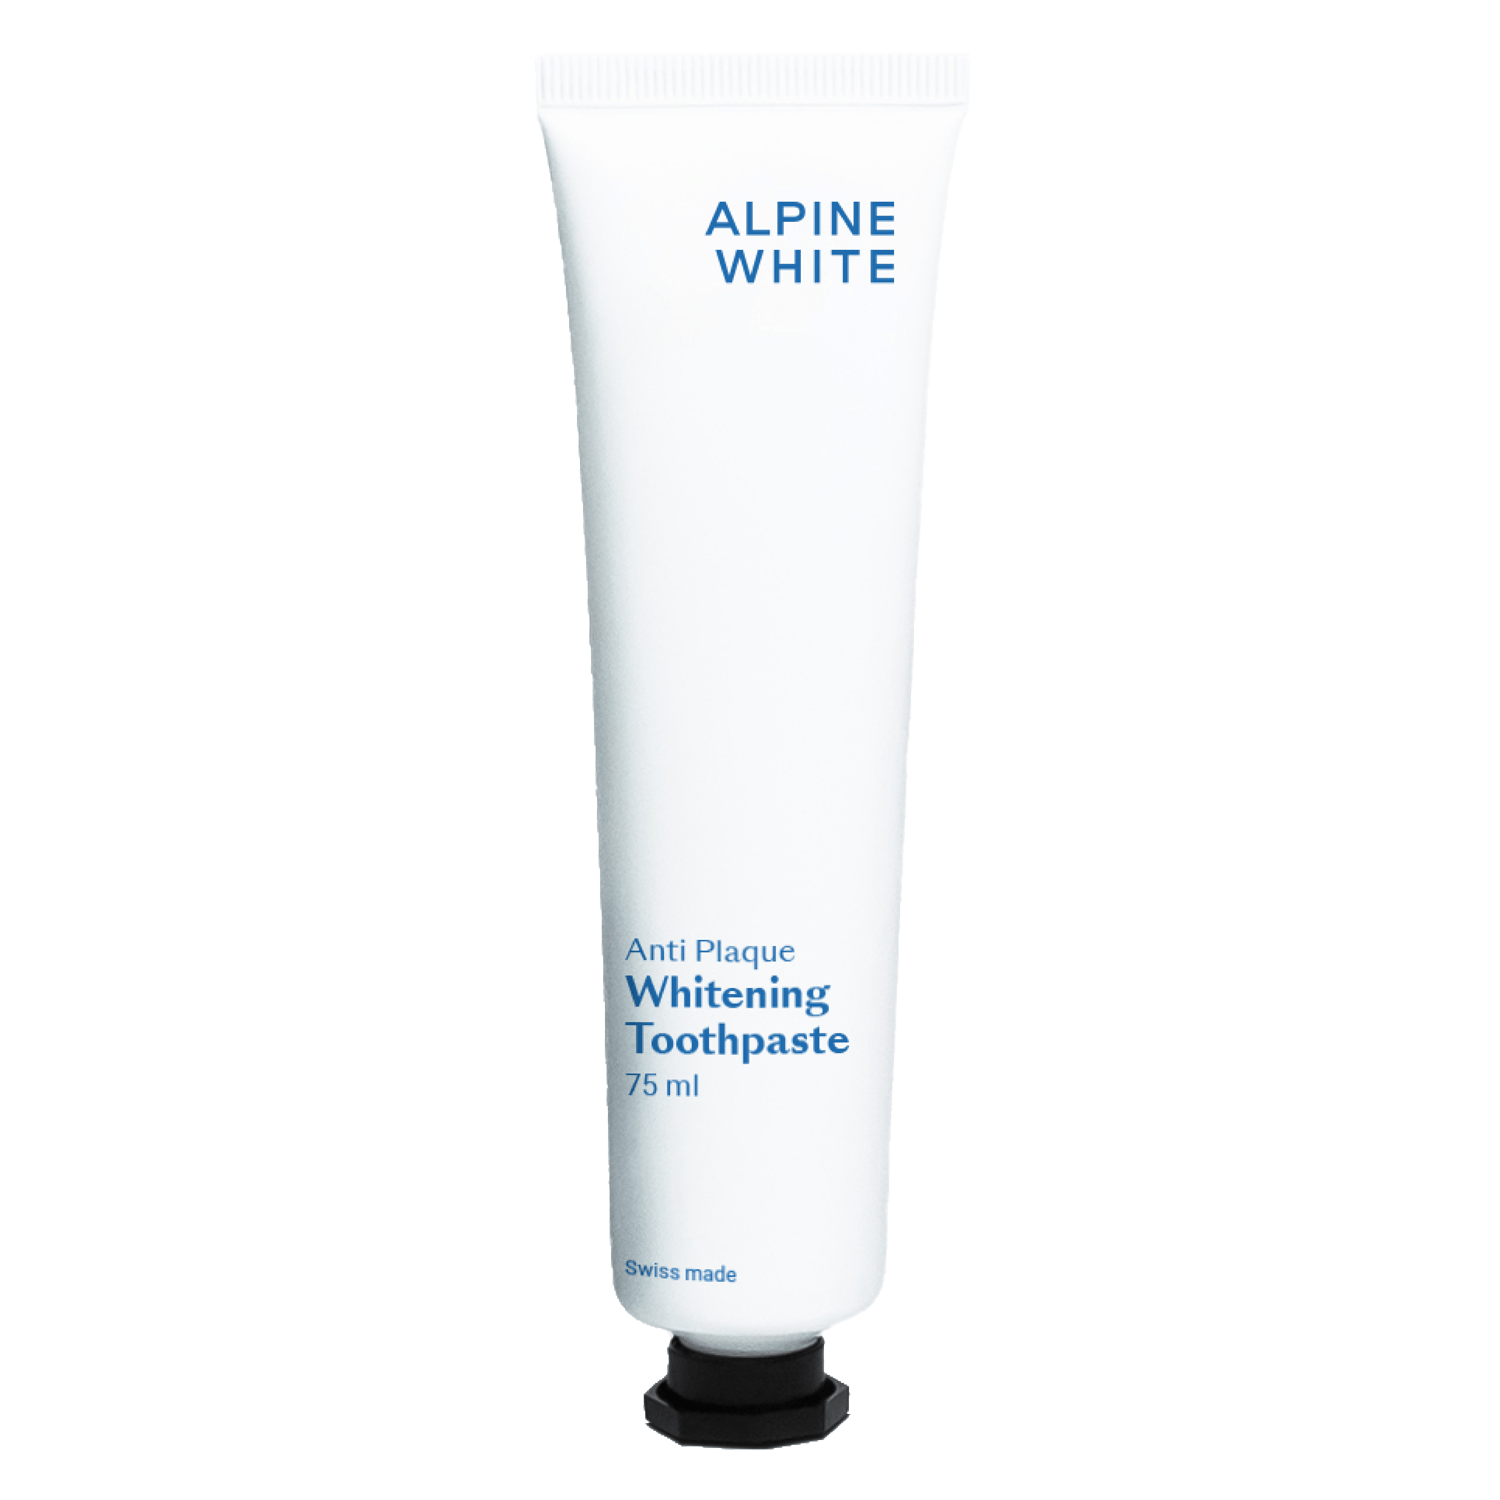 Produktbild von ALPINE WHITE - Whitening Zahnpasta Anti Plaque